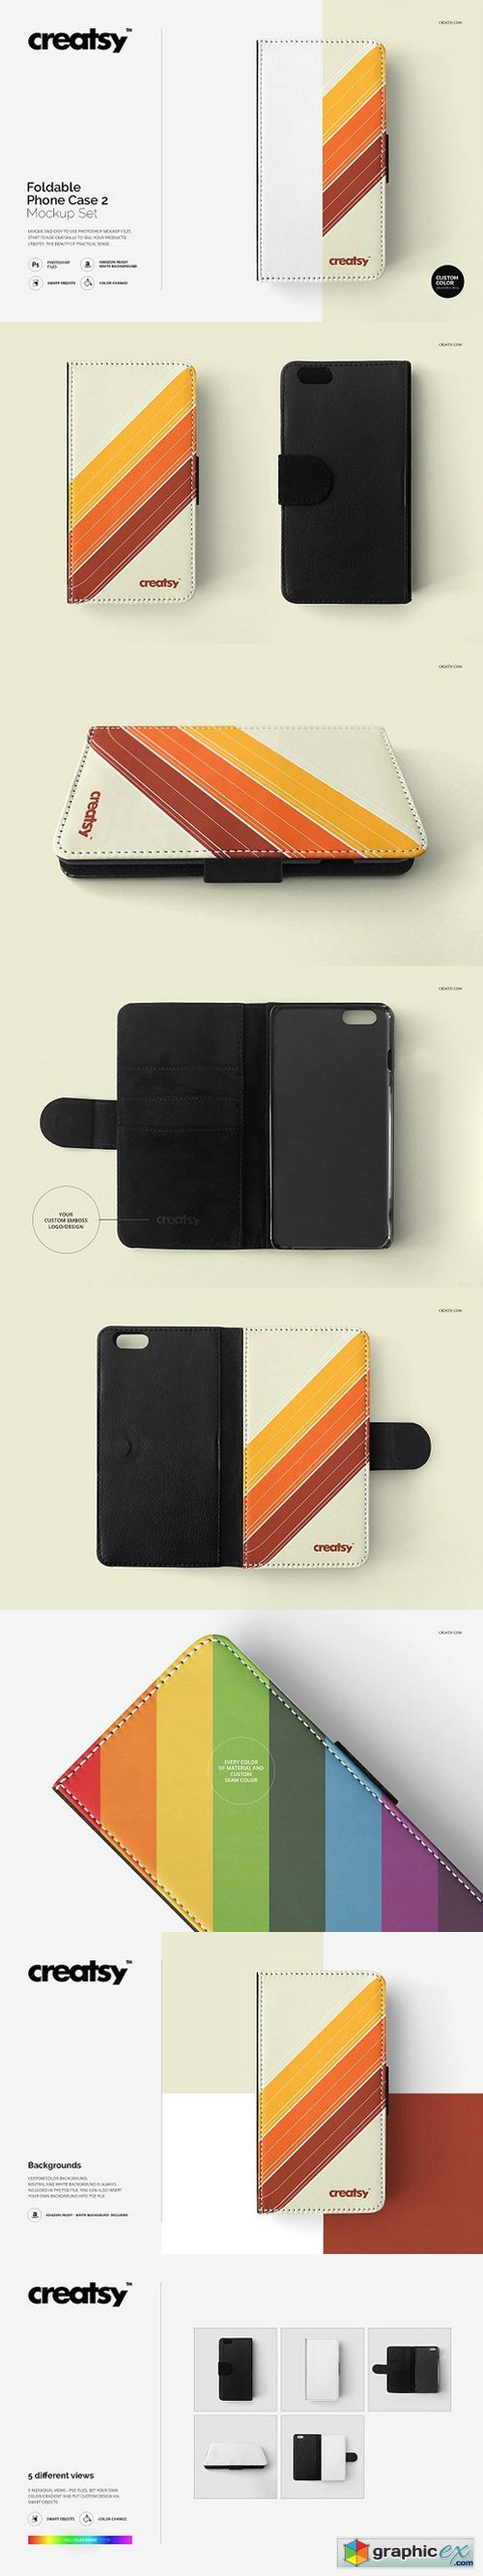 Foldable Phone Case 2 Mockup Set